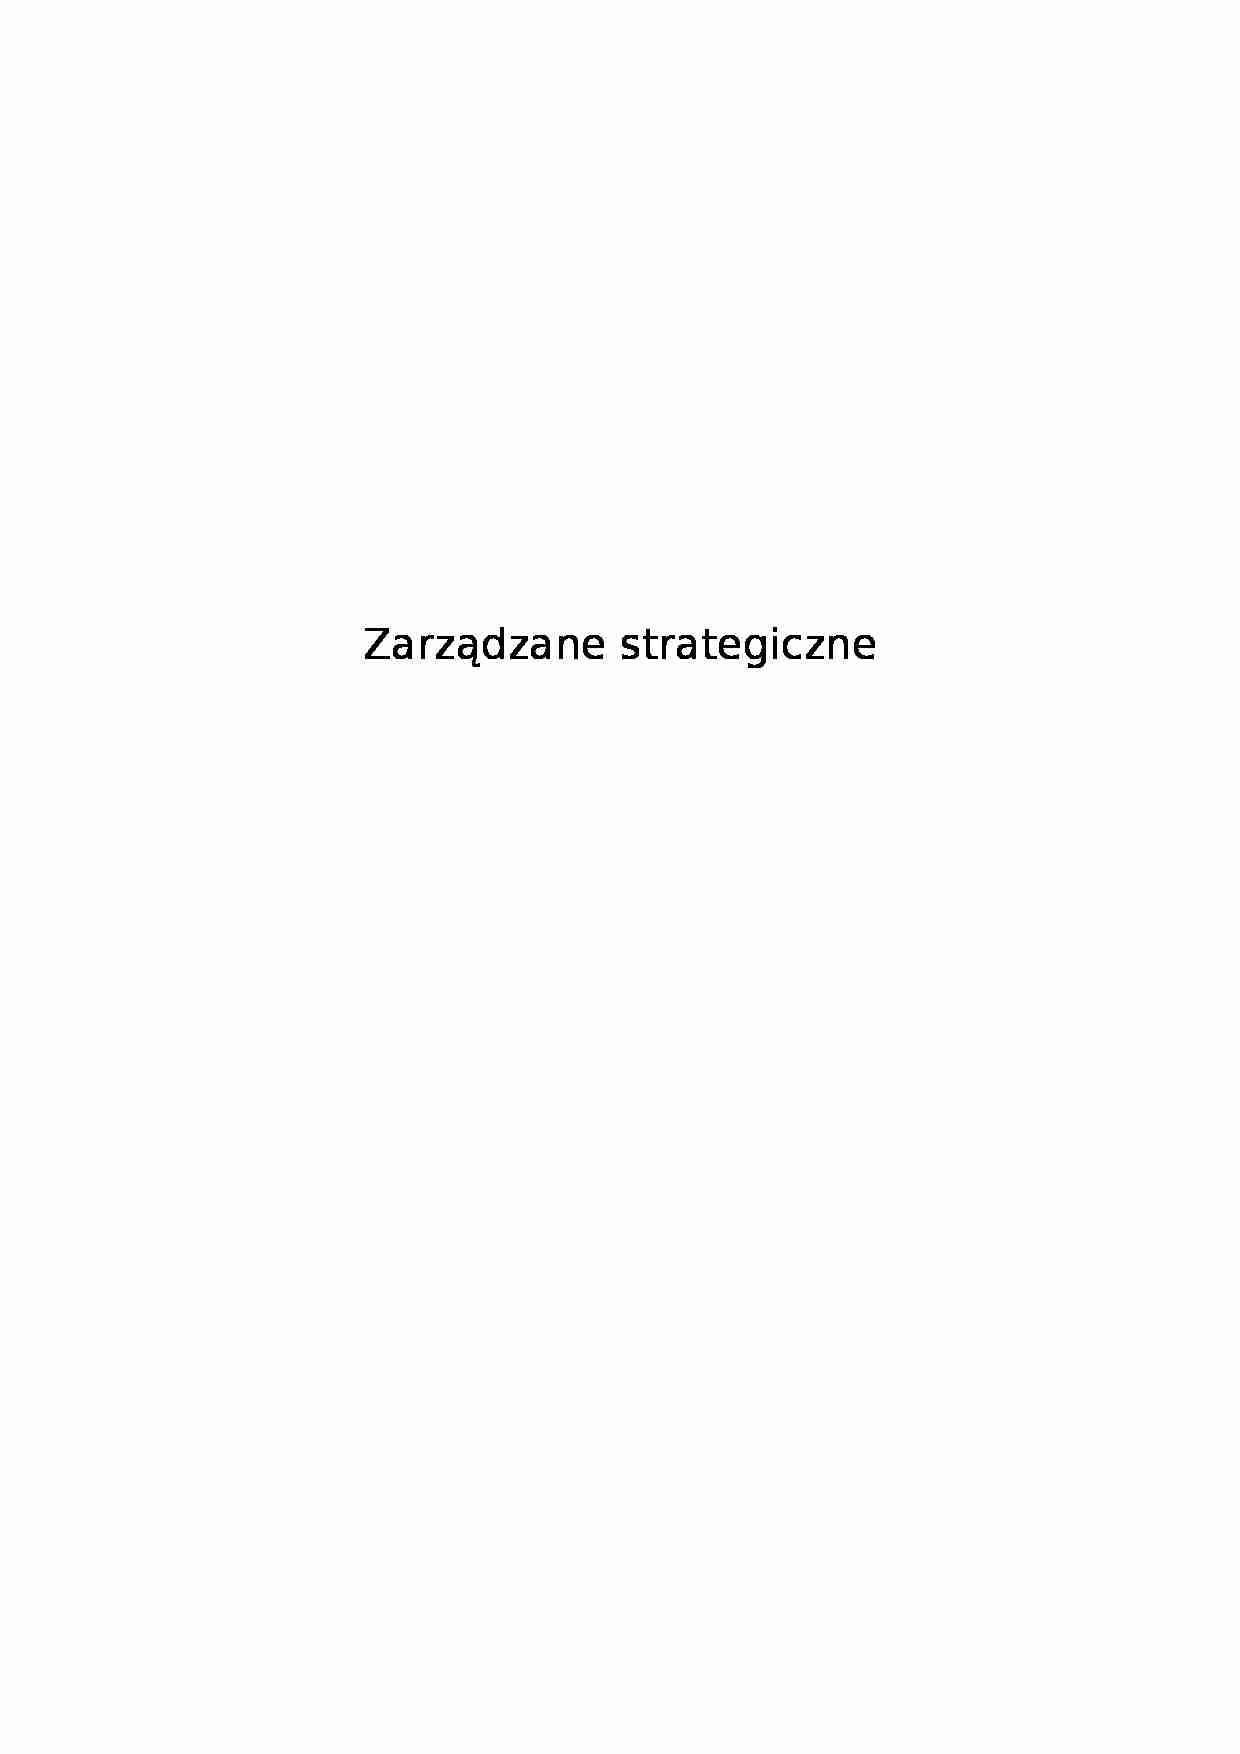 Zarządzane strategiczne - strona 1